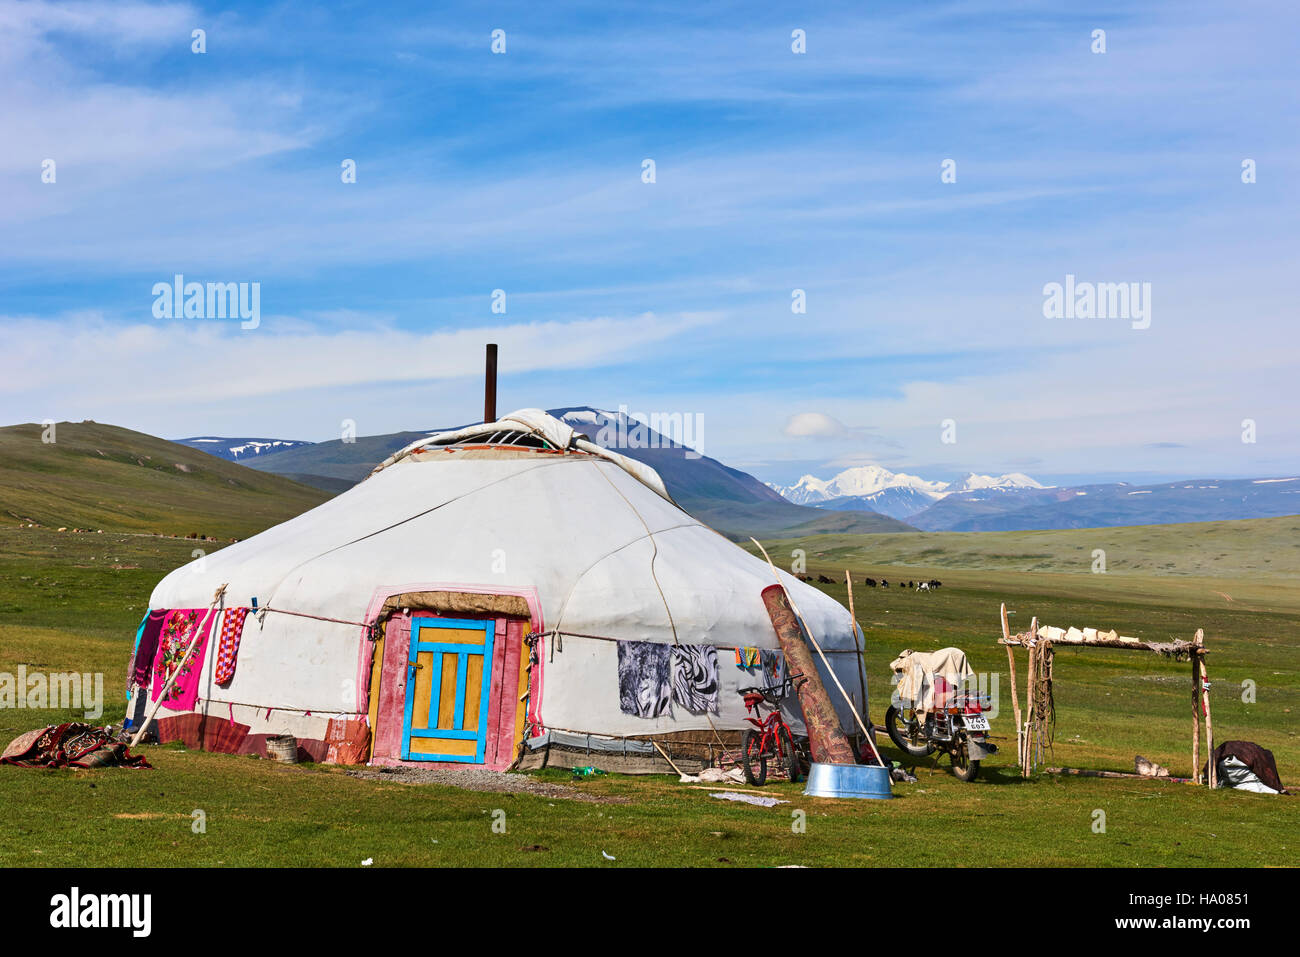 La Mongolie, Bayan-Ulgii province, l'ouest de la Mongolie, parc national de Tavan Bogd, le 5 plus haut sommet de la montagne de l'Altaï, camp nomade du Kazakh peopl Banque D'Images